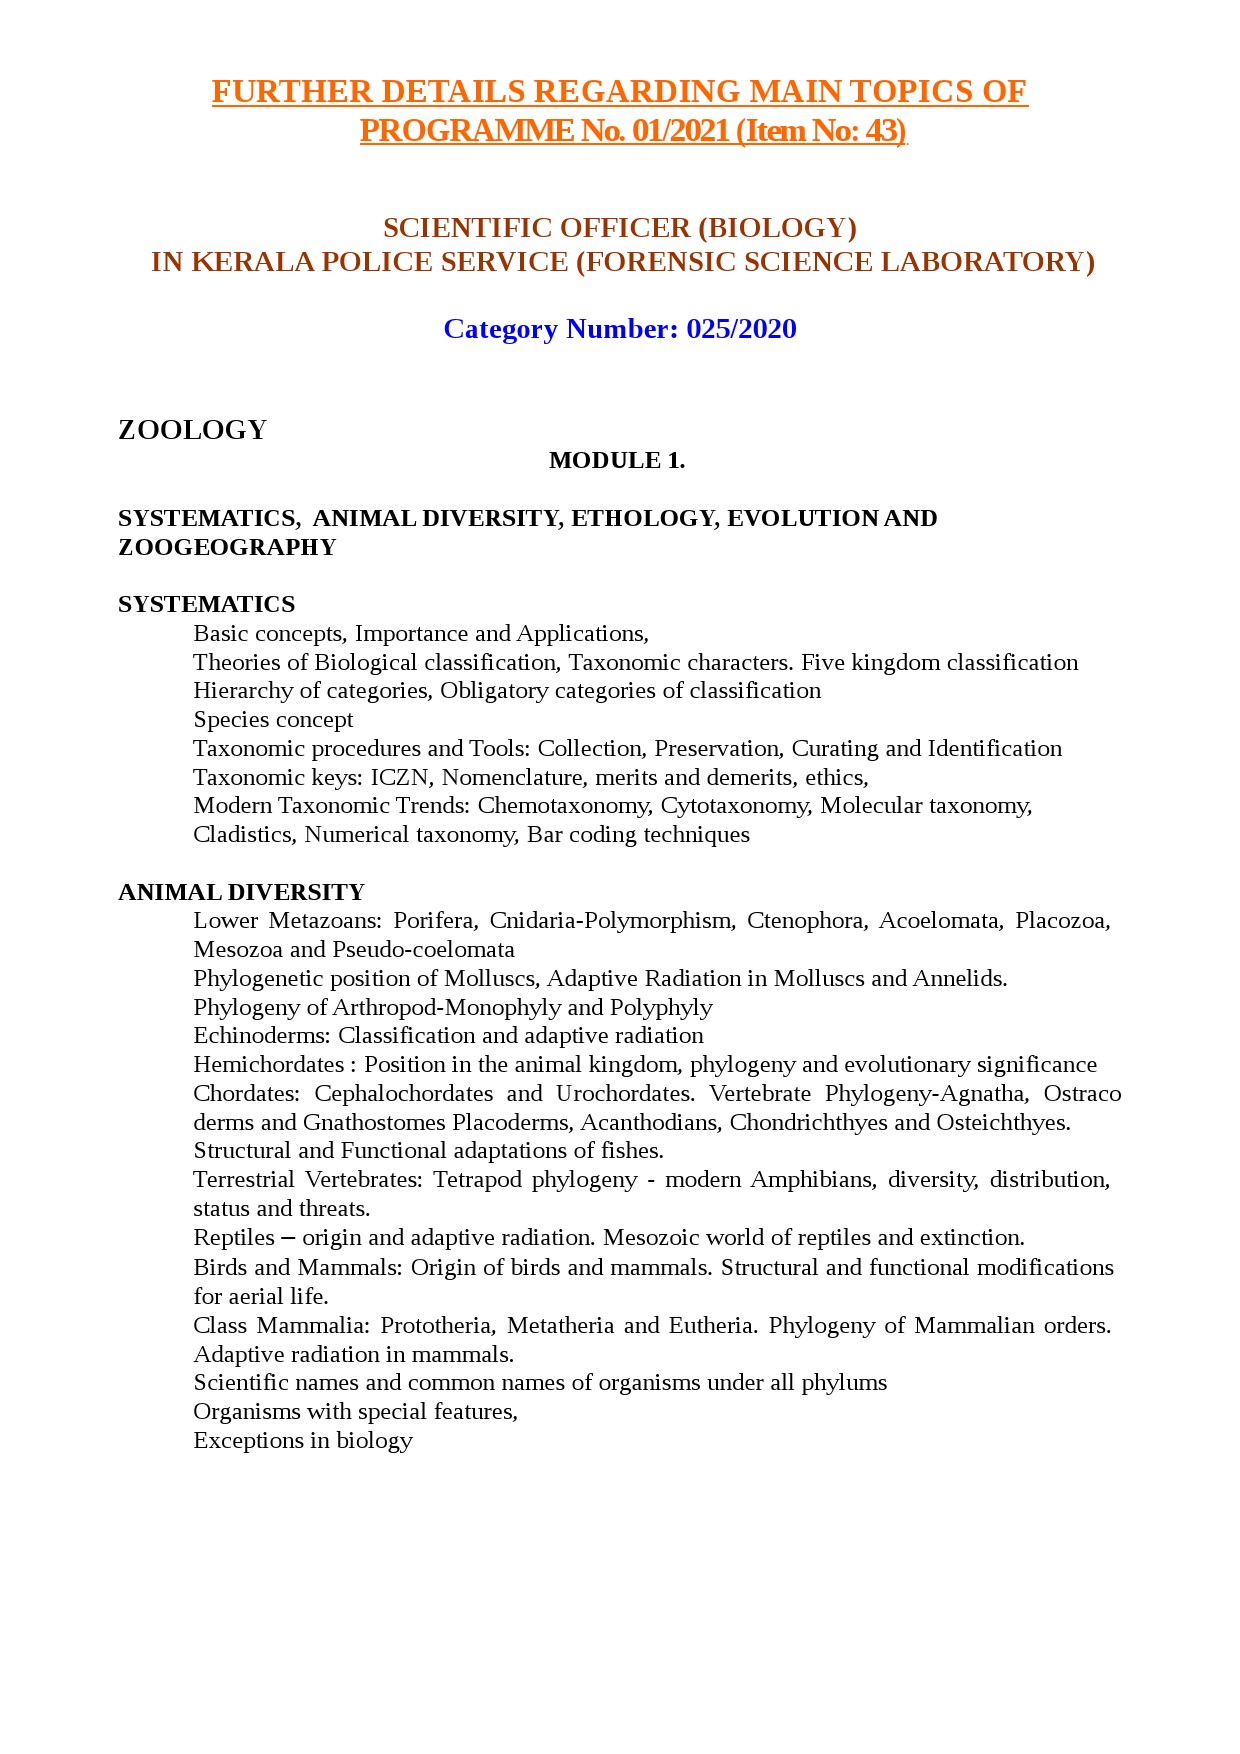 KPSC Syllabus 2021 Scientific Officer Biology - Notification Image 1